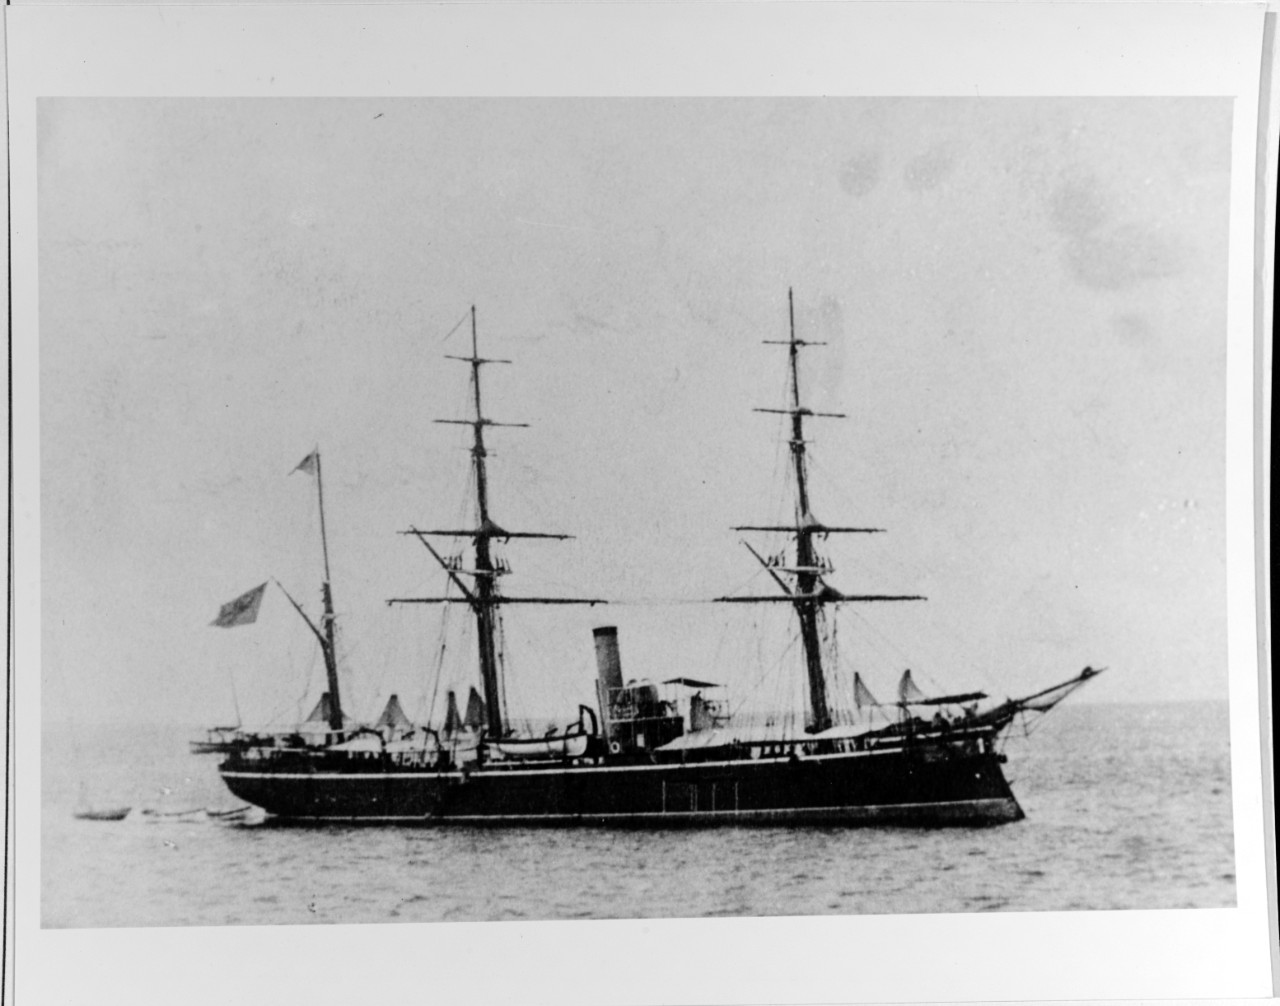 WEI YUEN (Chinese gunboat, 1877)